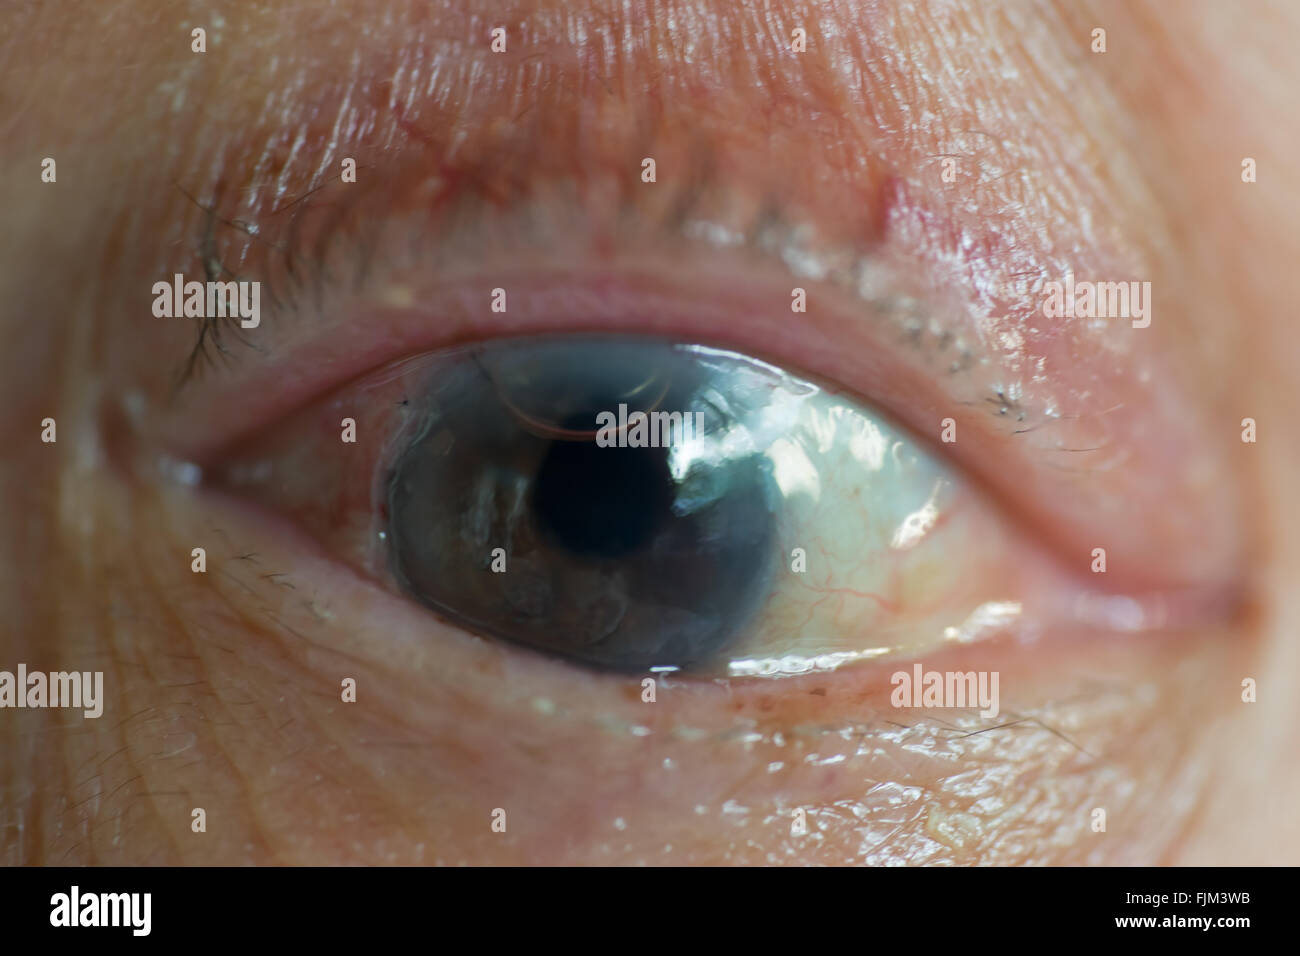 Il vecchio uomo di occhio con traccia di cornea intervento chirurgico, bolla d'aria e una sutura di seta Foto Stock